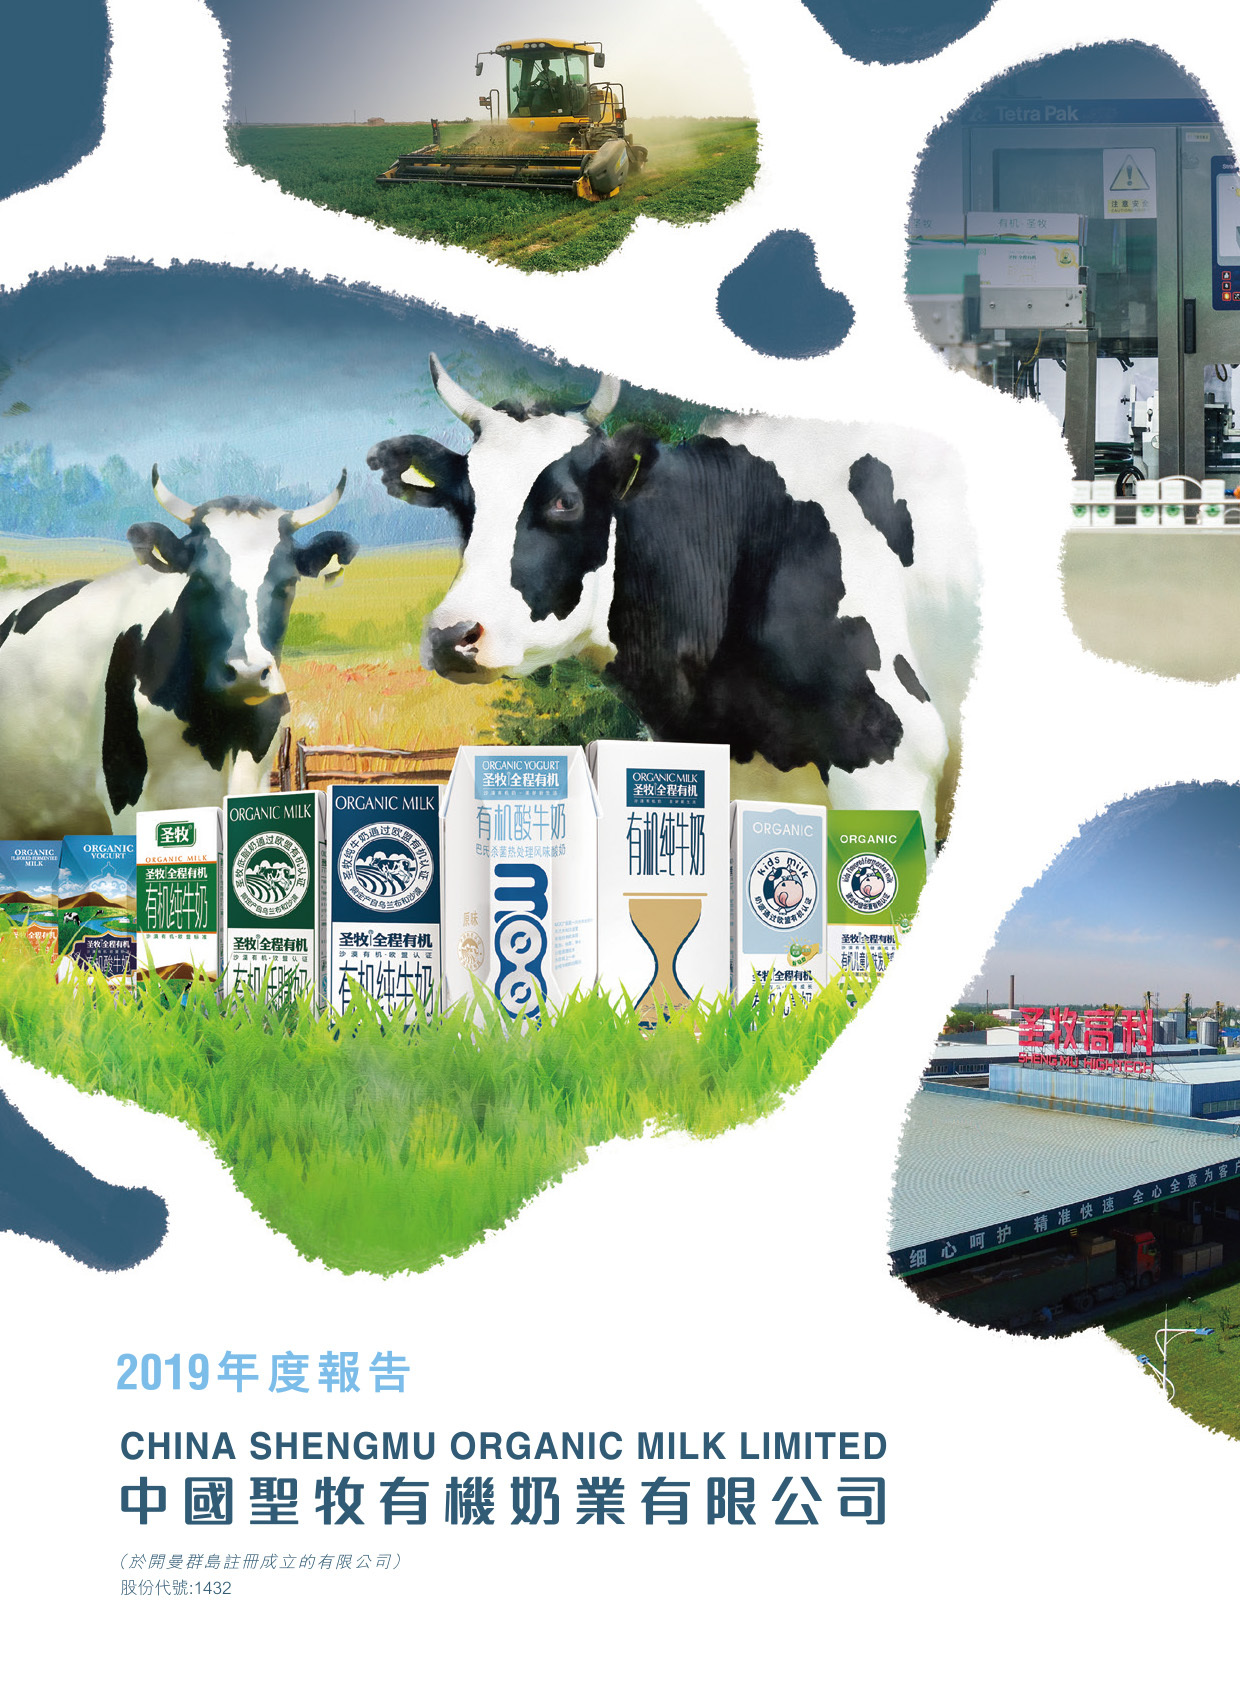 中國聖牧有機奶業有限公司